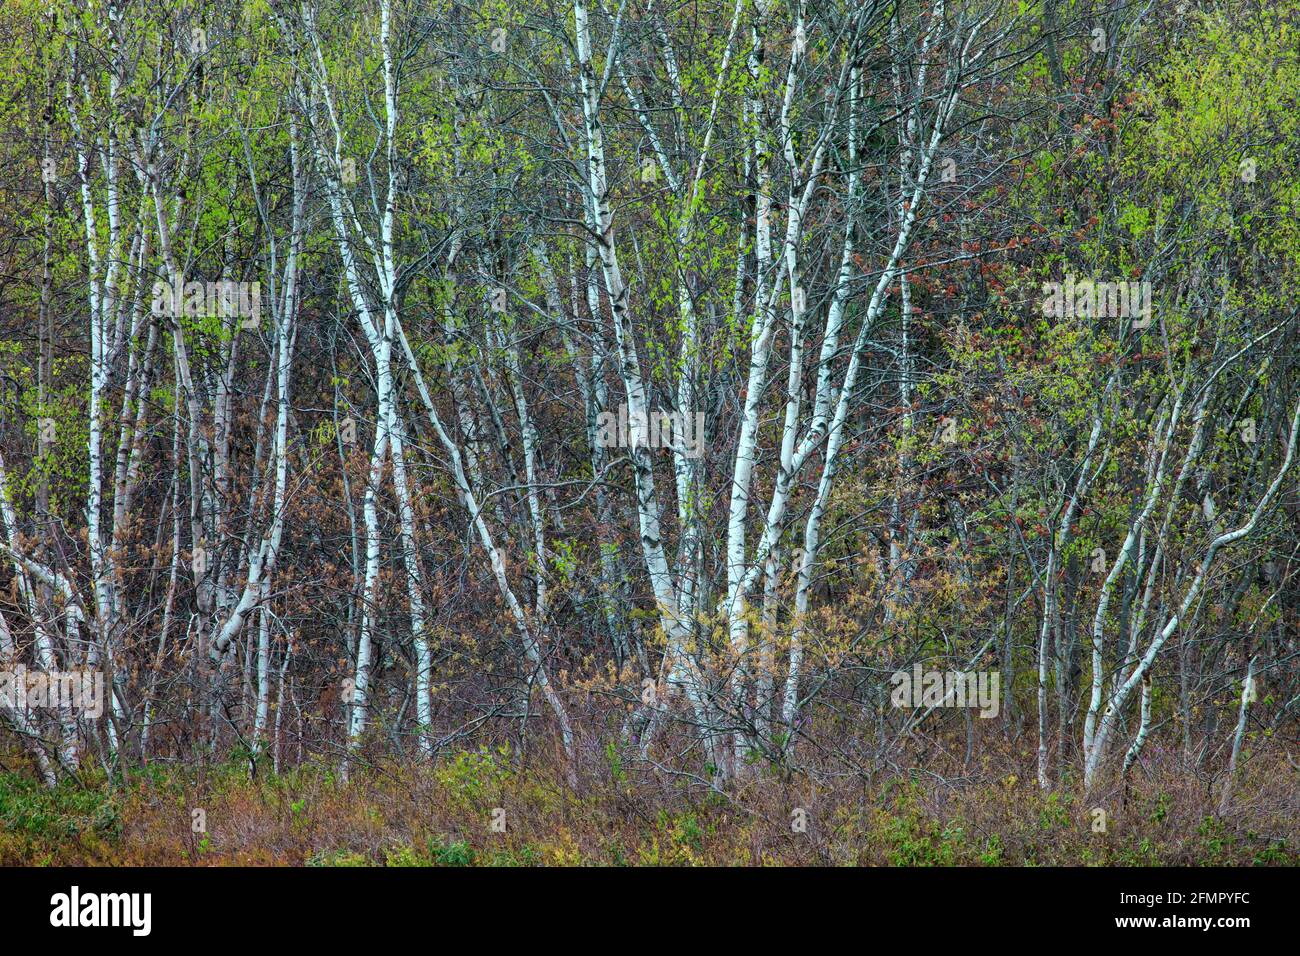 Le bouleau gris est une espèce d'arbre pionnier à courte durée de vie que l'on trouve à la lisière de la forêt et dans les zones ouvertes qui font l'effet de revenir à la forêt. Banque D'Images